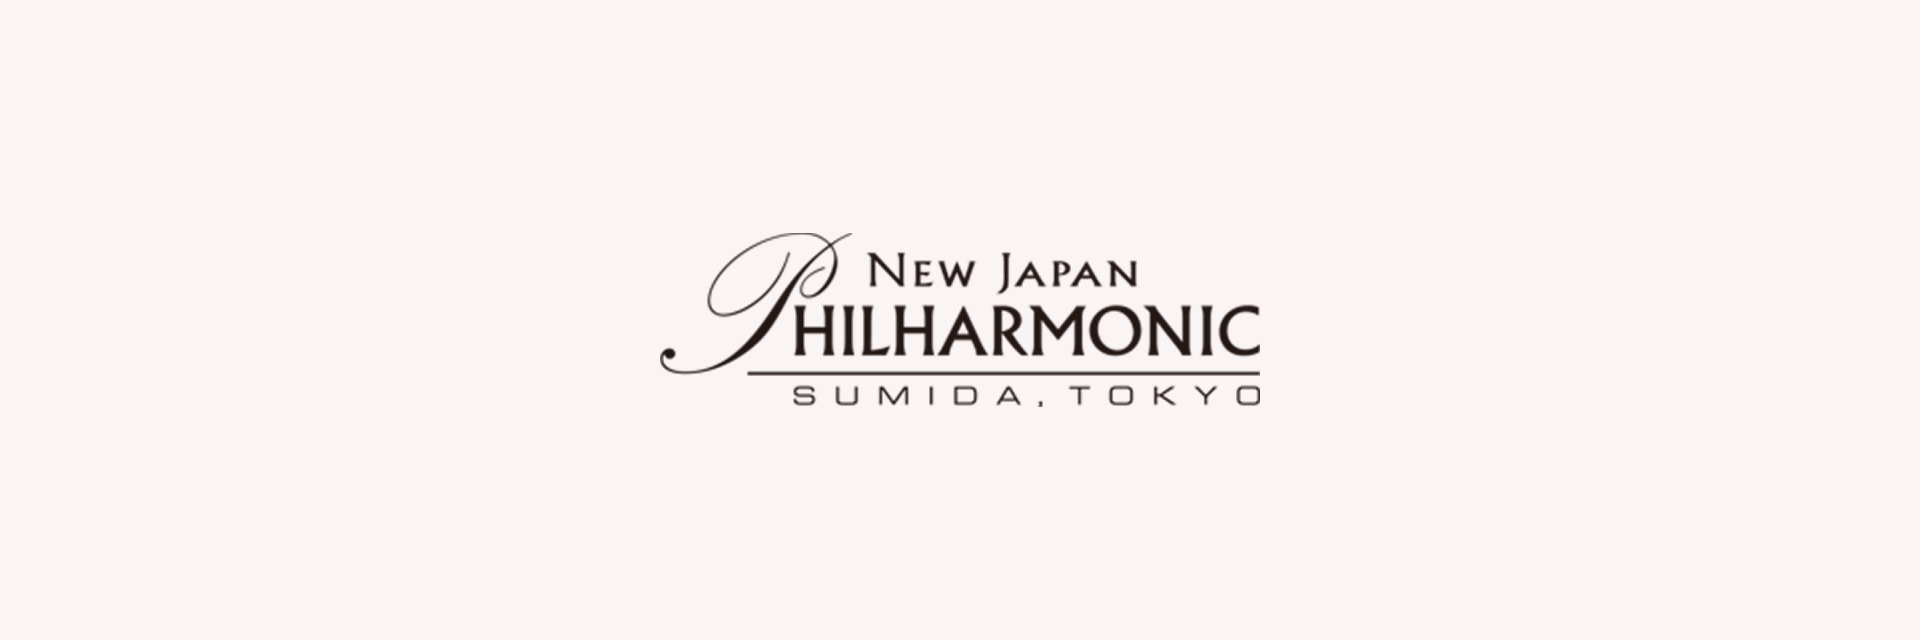 新日本フィルハーモニー交響楽団 第638回定期